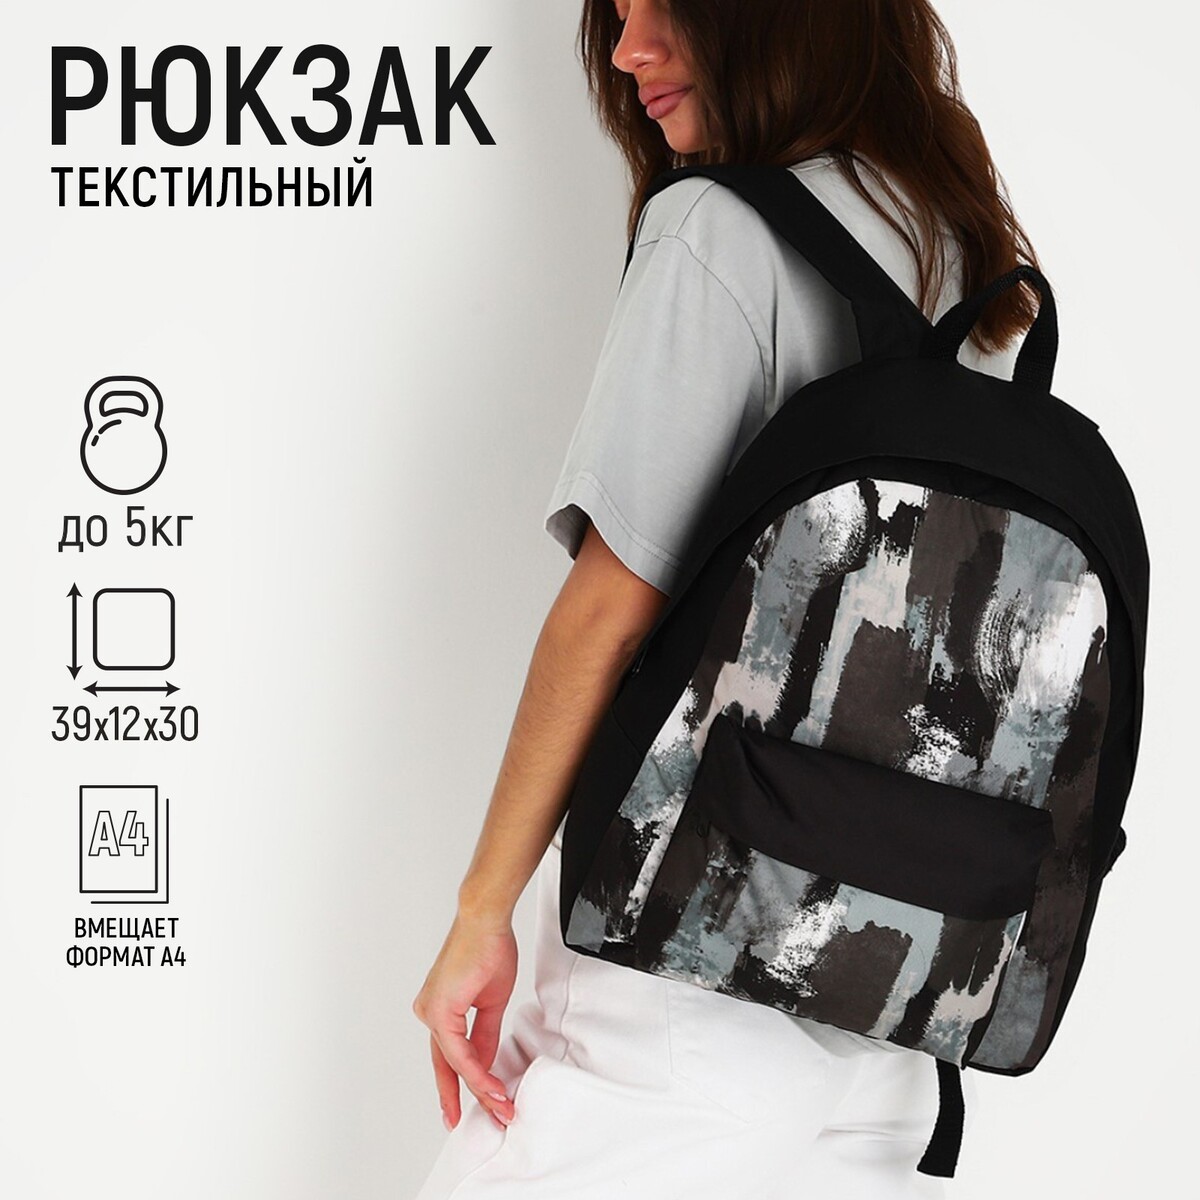 Рюкзак текстильный хаки, с карманом, 30х12х40см, цвет черный, серый